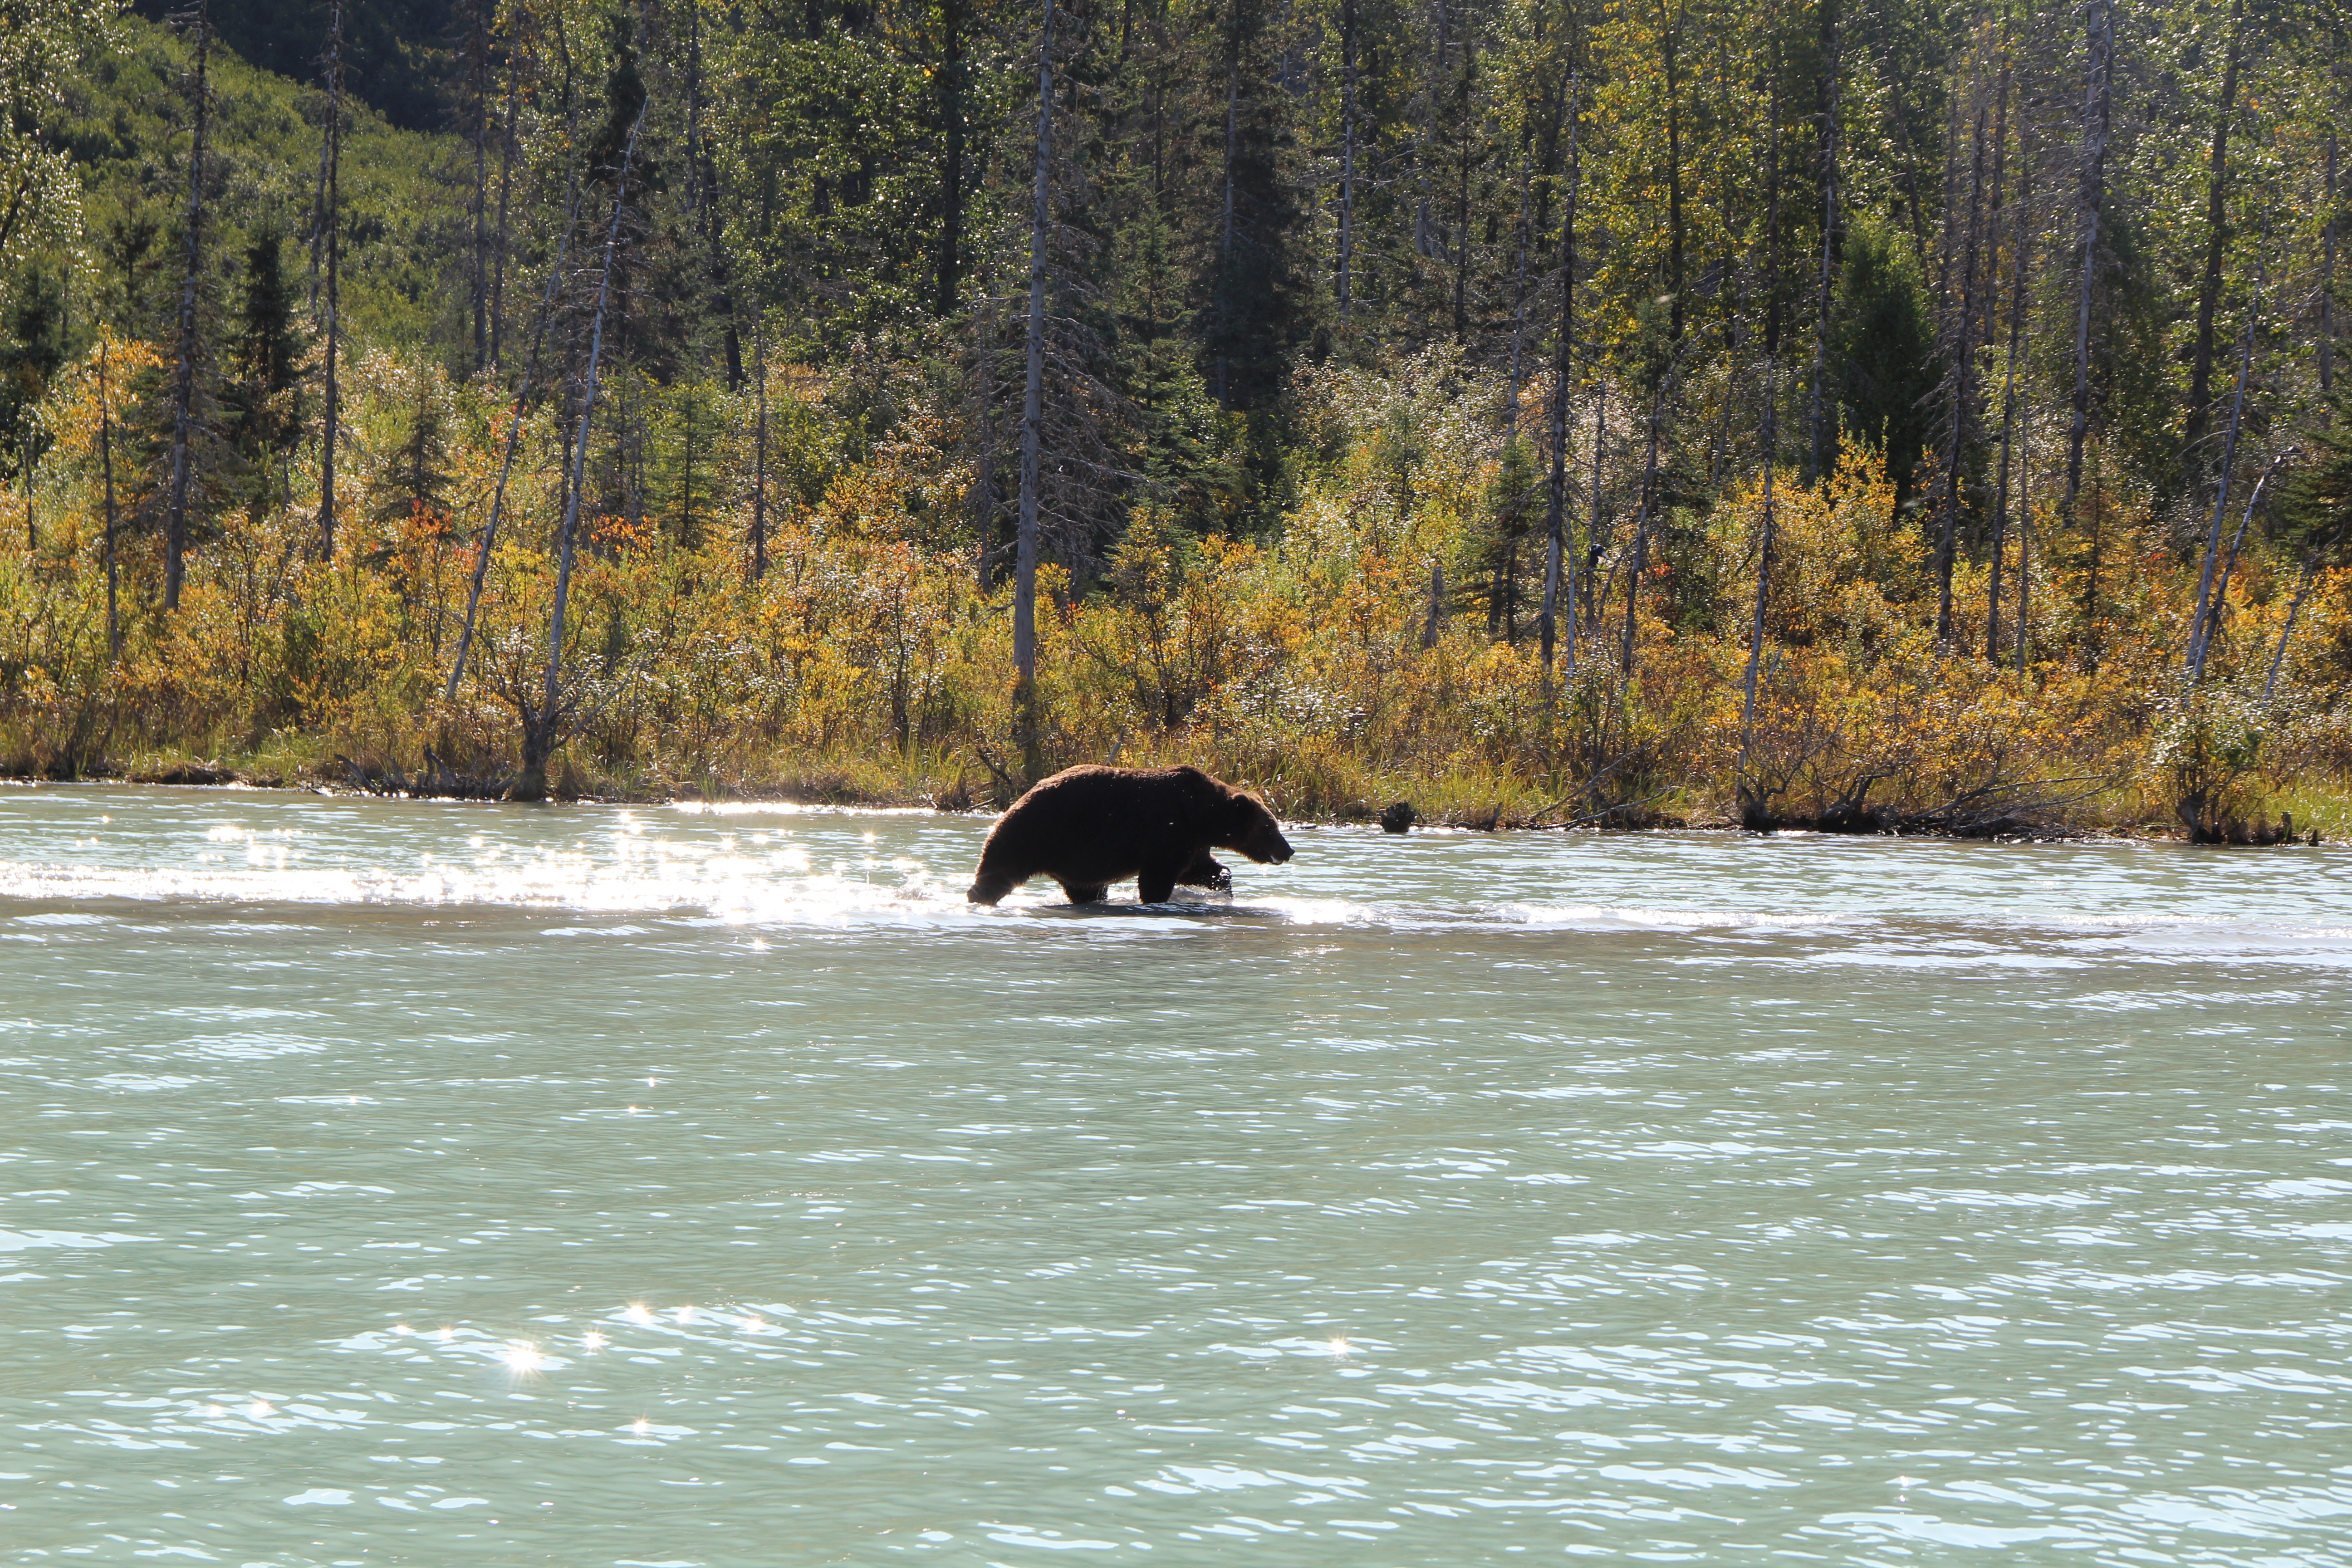 Ver ursos no Alasca